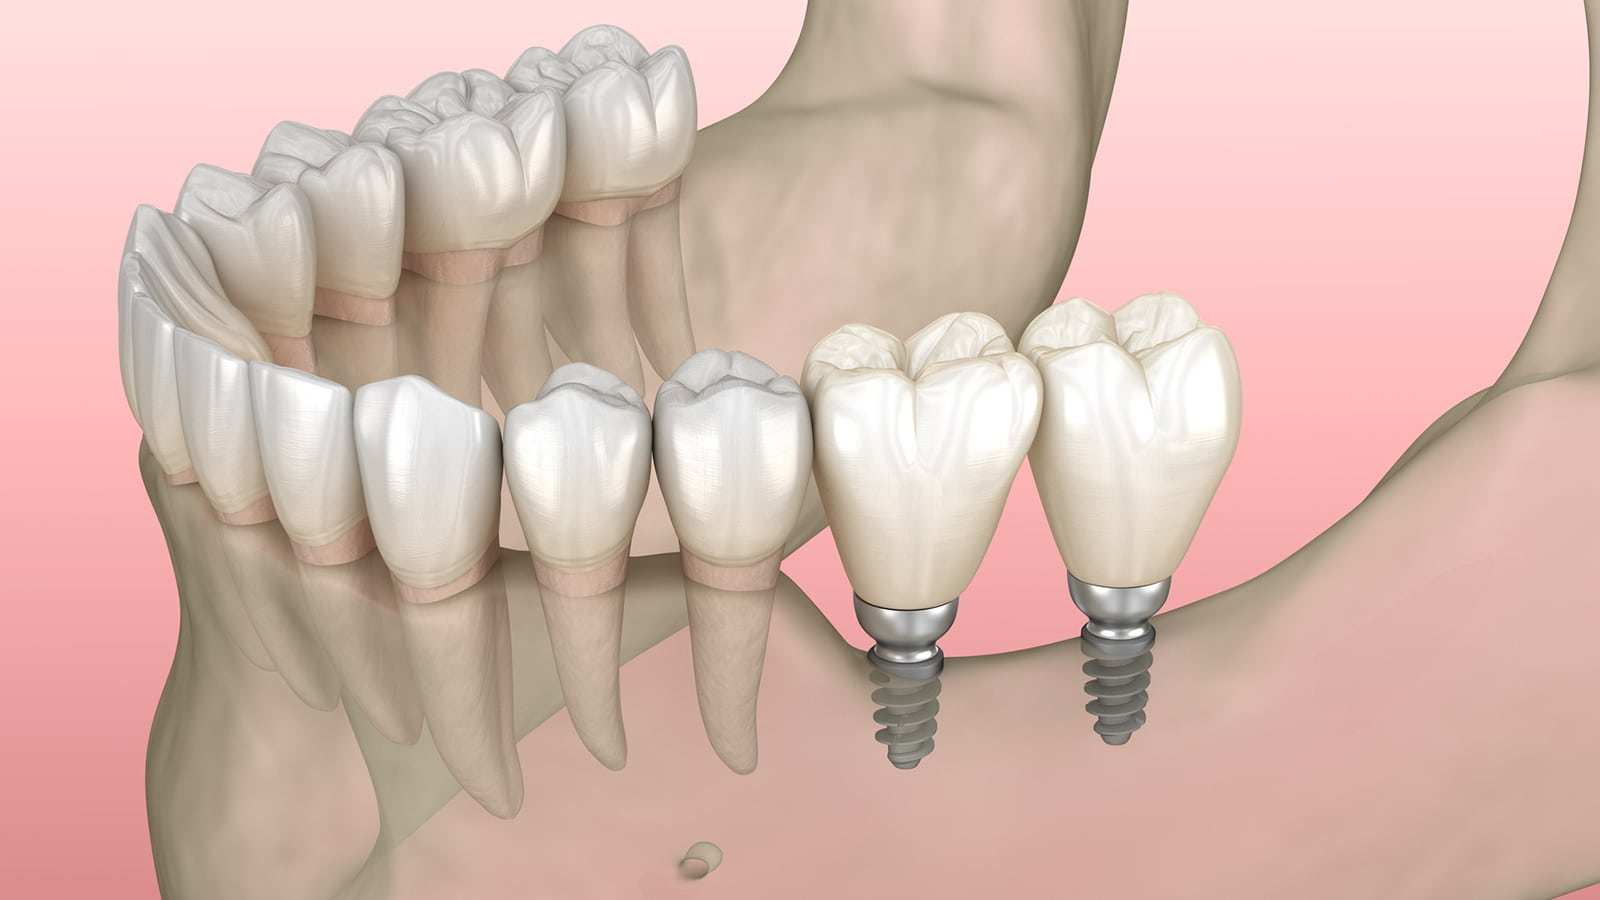 Mini Implant Illustration